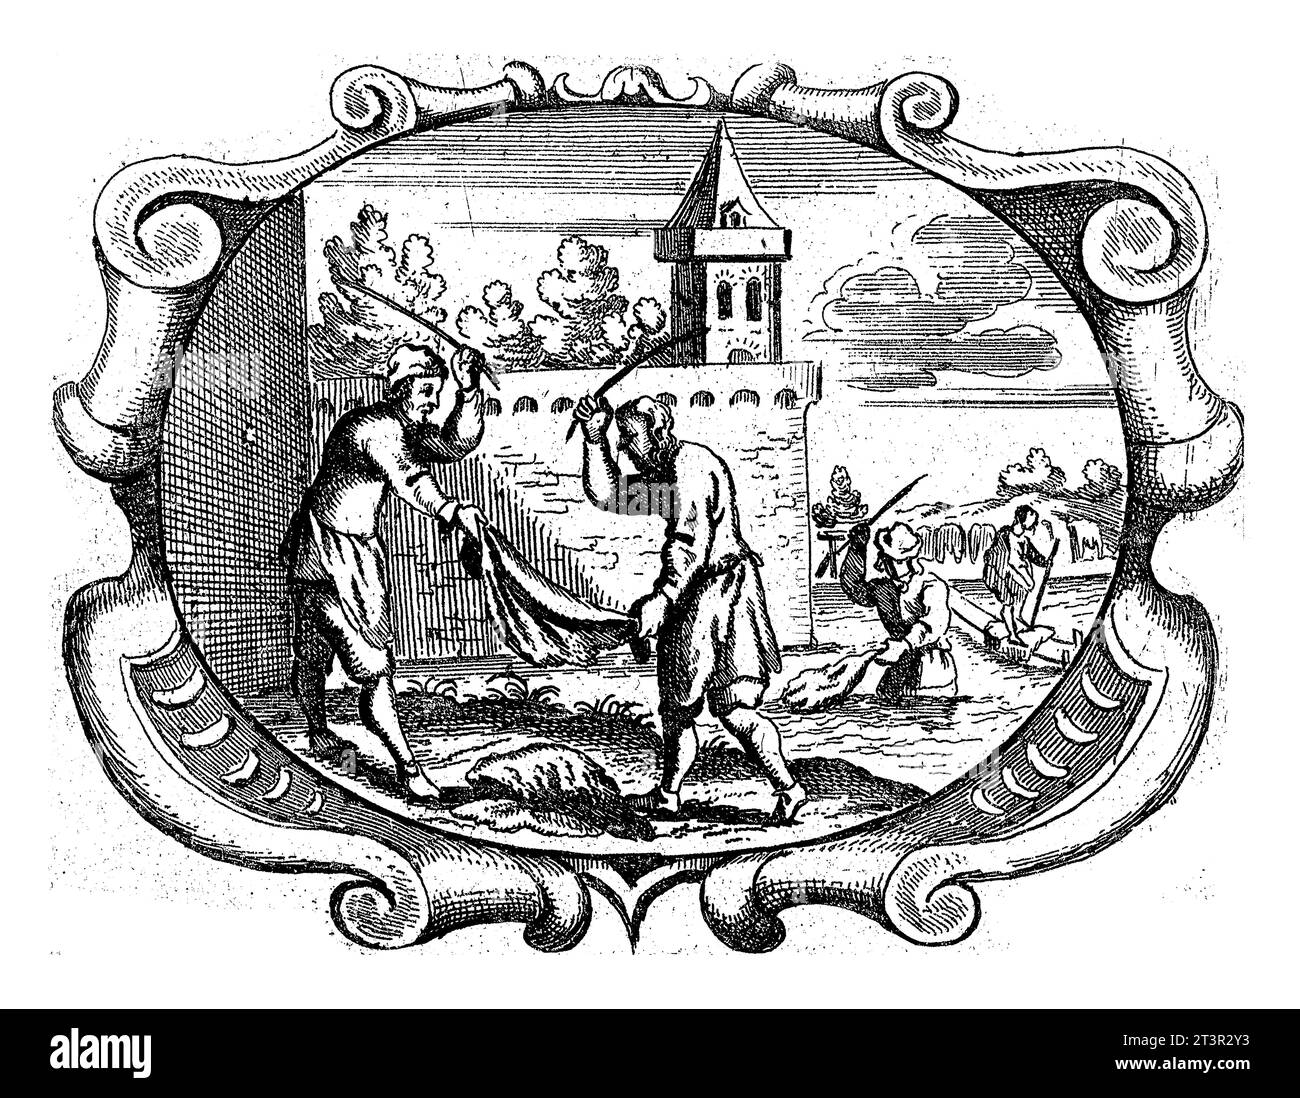 Adversity Maks the Soul Pure, Gaspar Bouttats, 1679 pagina da un libro (pag.174) con testo e vignetta di tipografia in verso. In un cartiglio ovale la banca Foto Stock